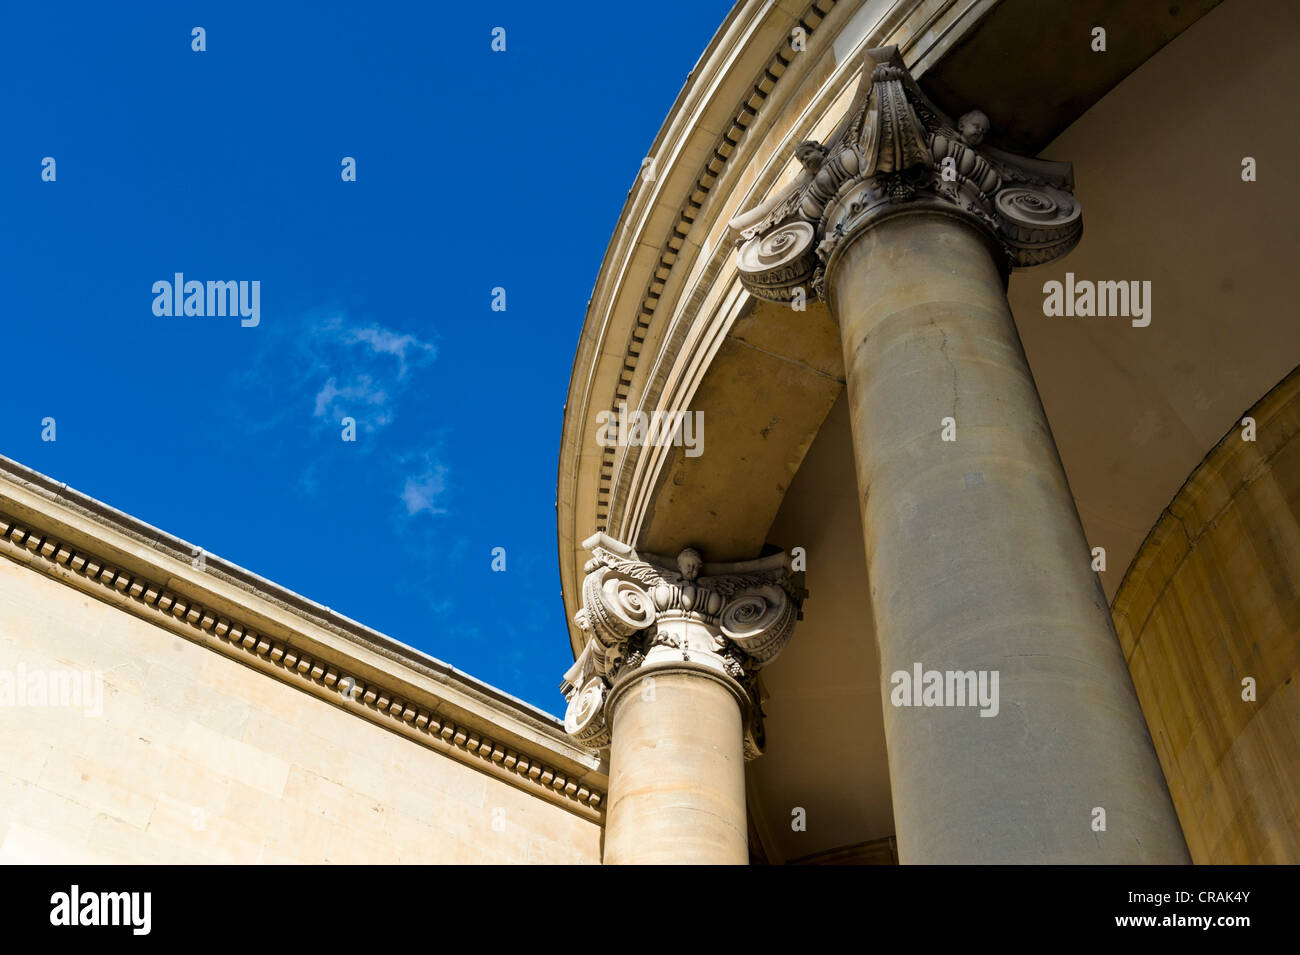 Spalten der neoklassischen All Souls Church von John Nash, London, England, Vereinigtes Königreich, Europa Stockfoto